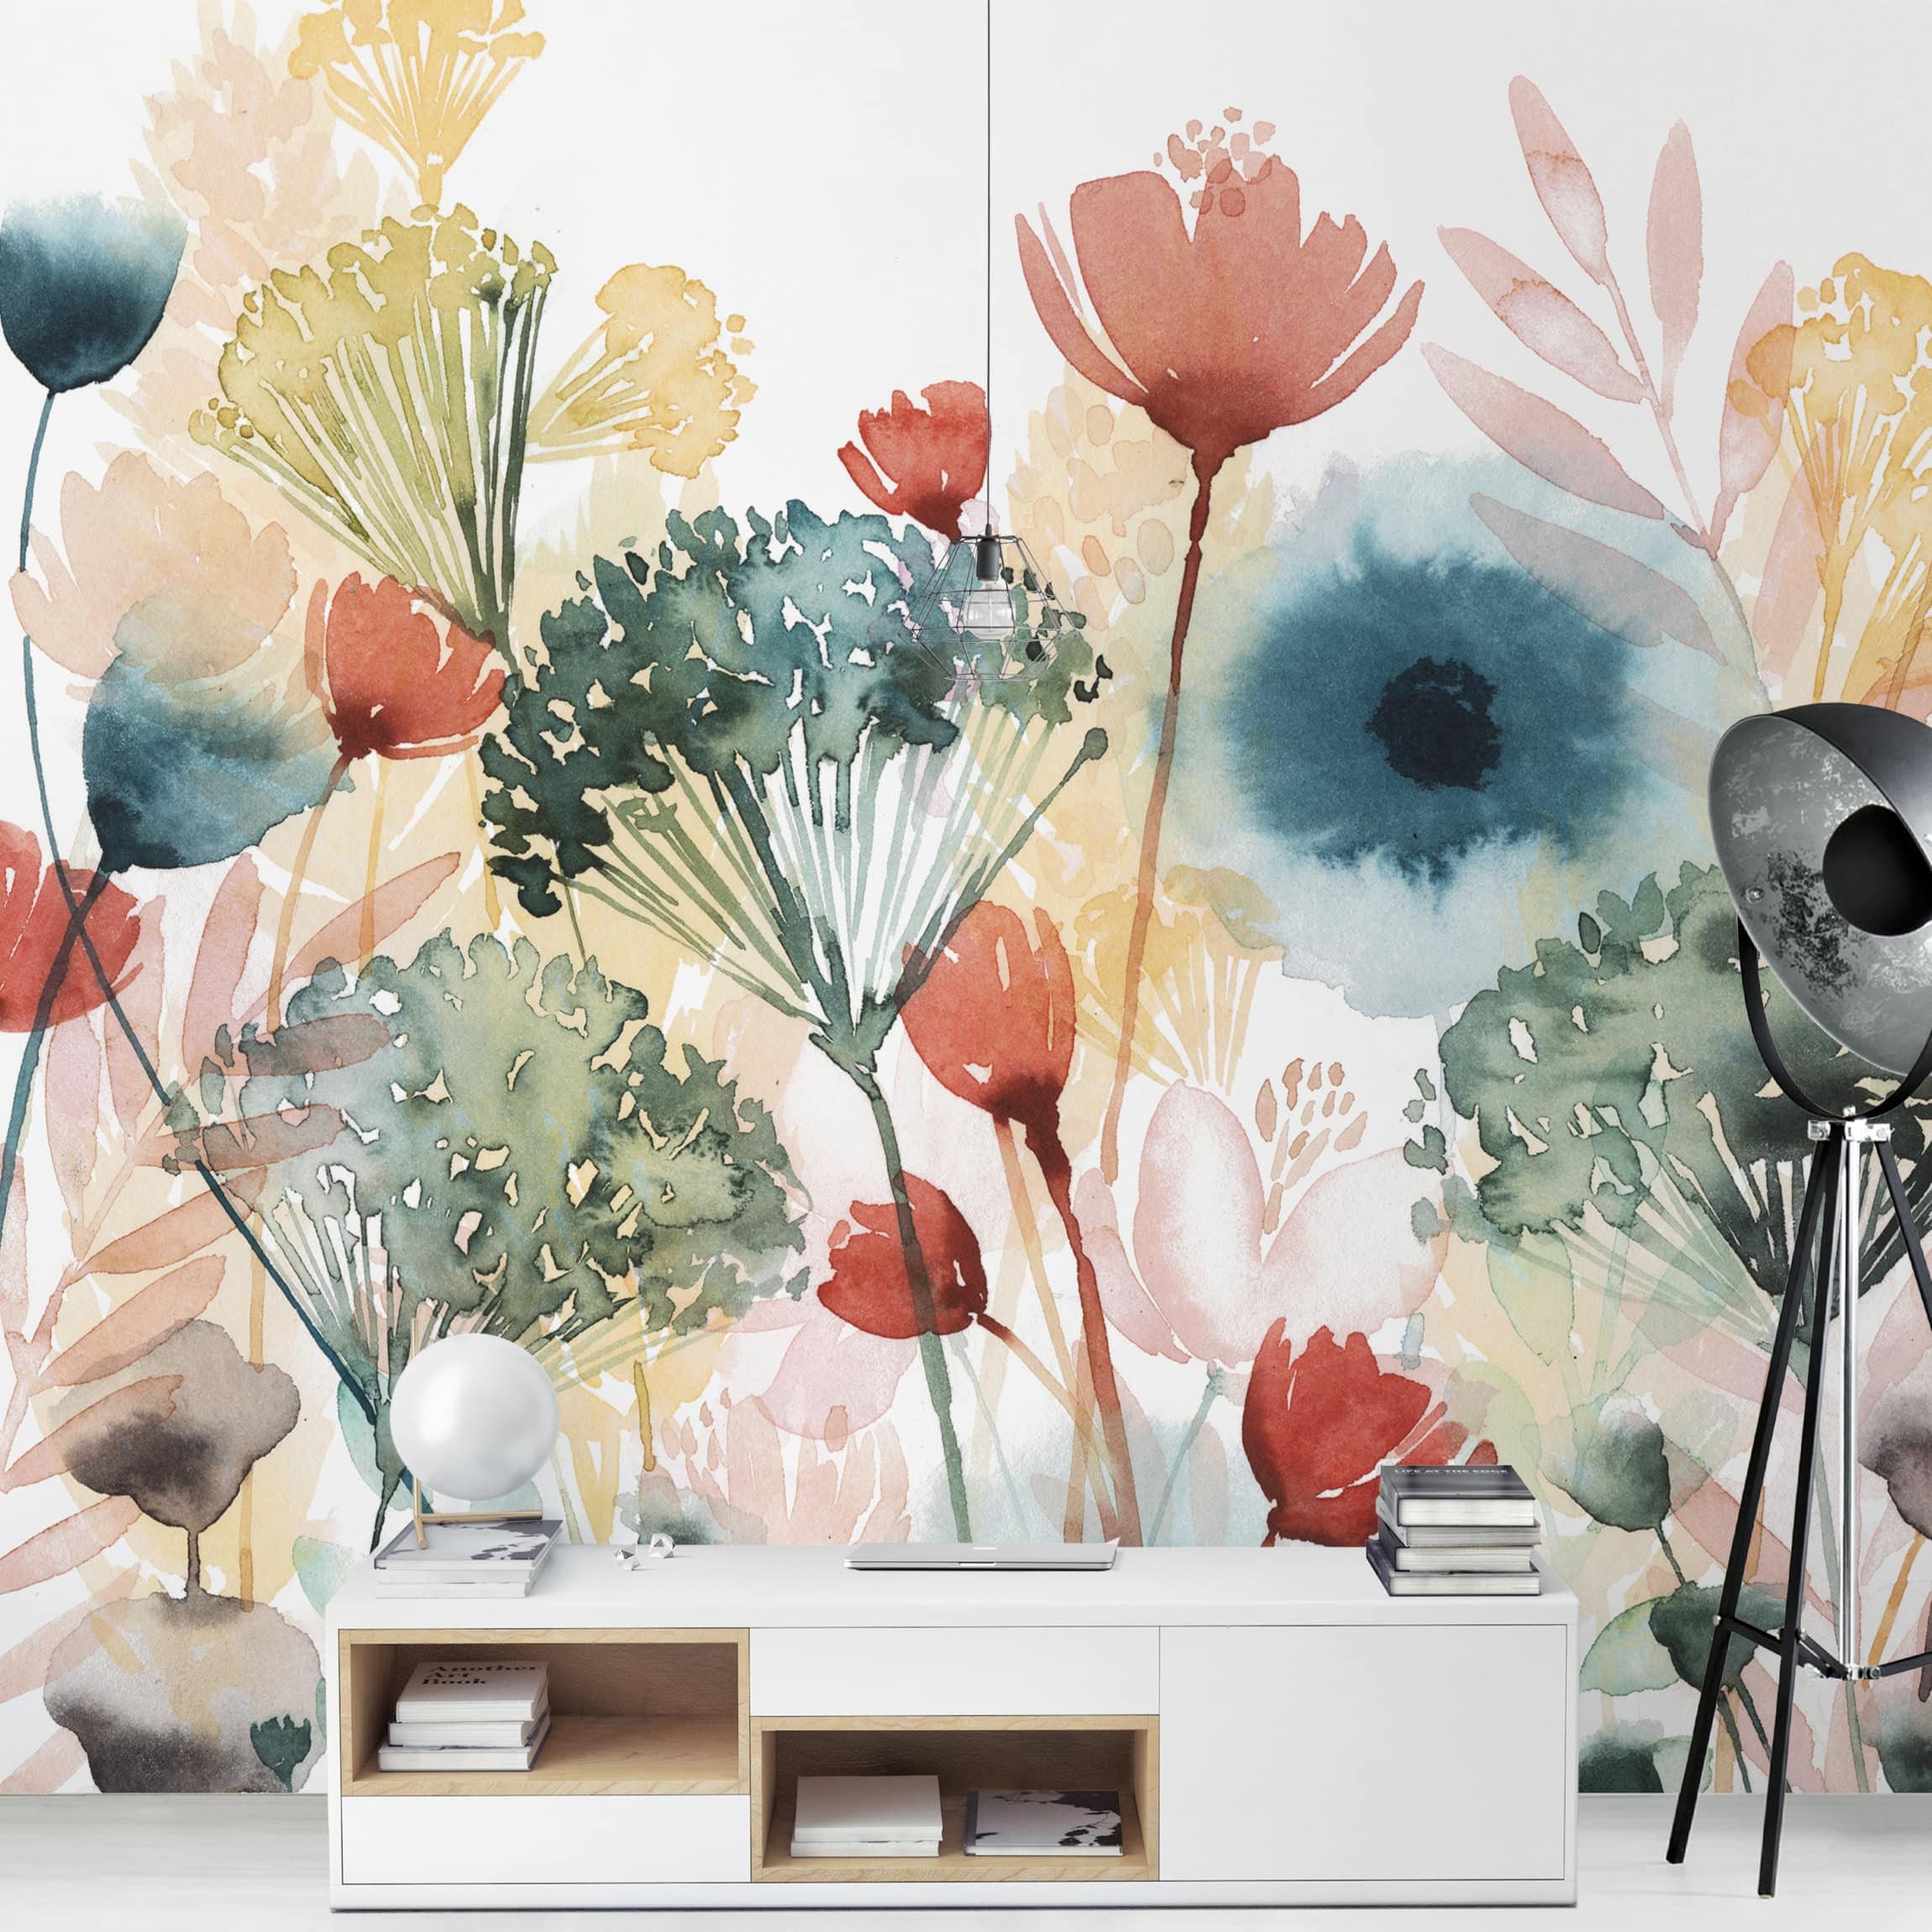  Papel pintado mural para paredes, flores blancas y bonitas  plantas naturales frescas, personalizado, 3D, gran espacio, extraíbles,  murales de pared, autoadhesivos, papel pintado grande, decoración del  hogar, dormitorio, comedor, sala de